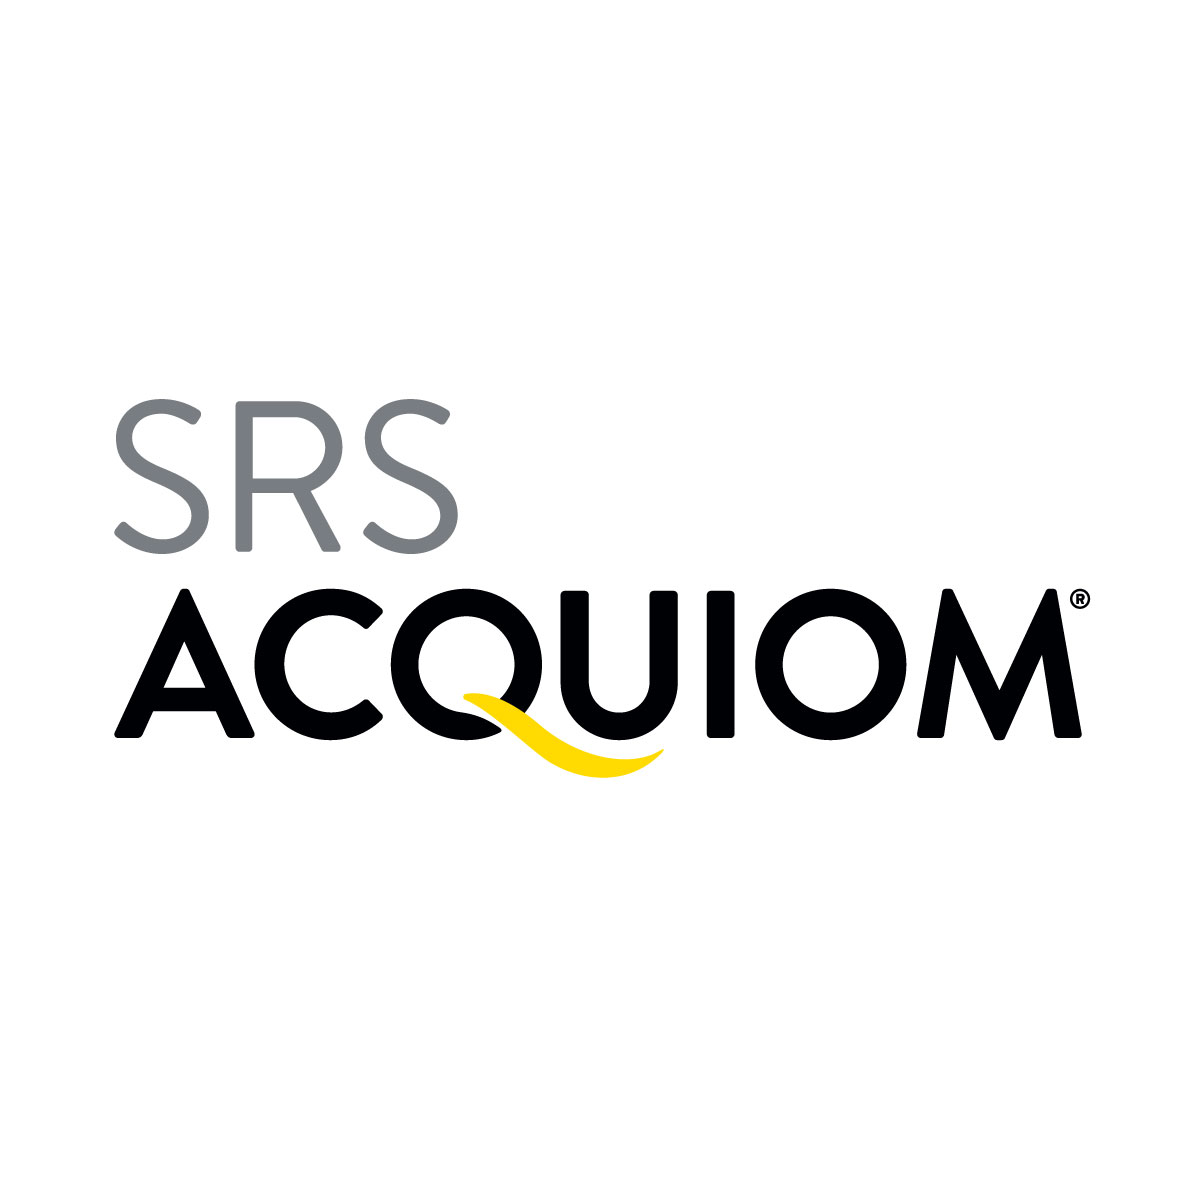 SRS Acquiom